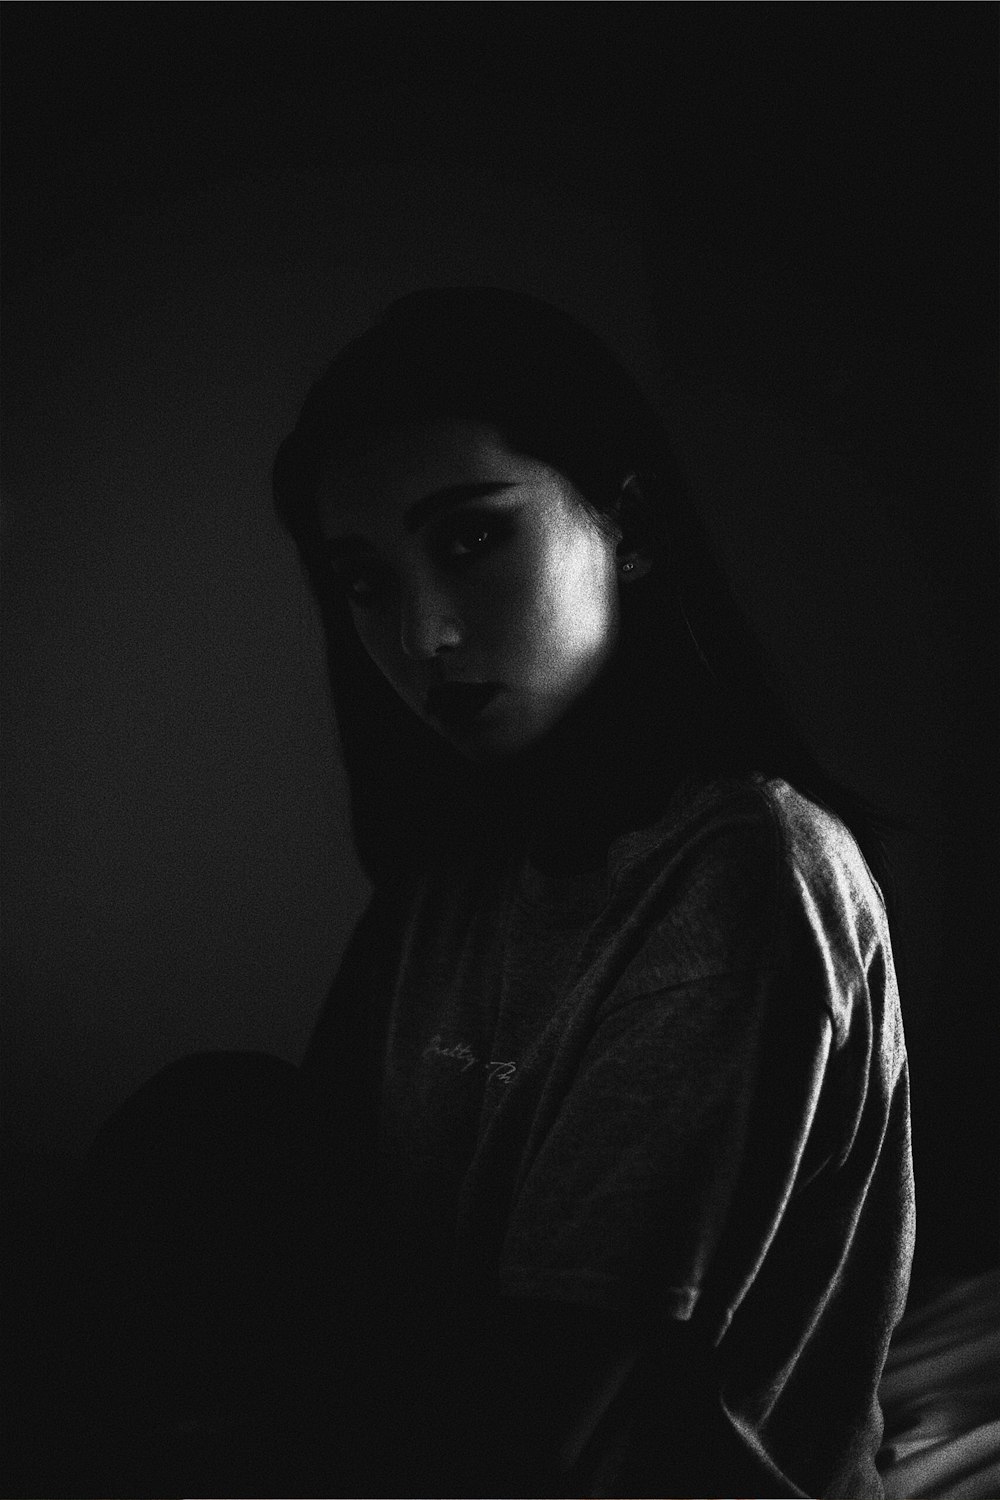 Fotografía en escala de grises de una mujer dentro de un cuarto oscuro